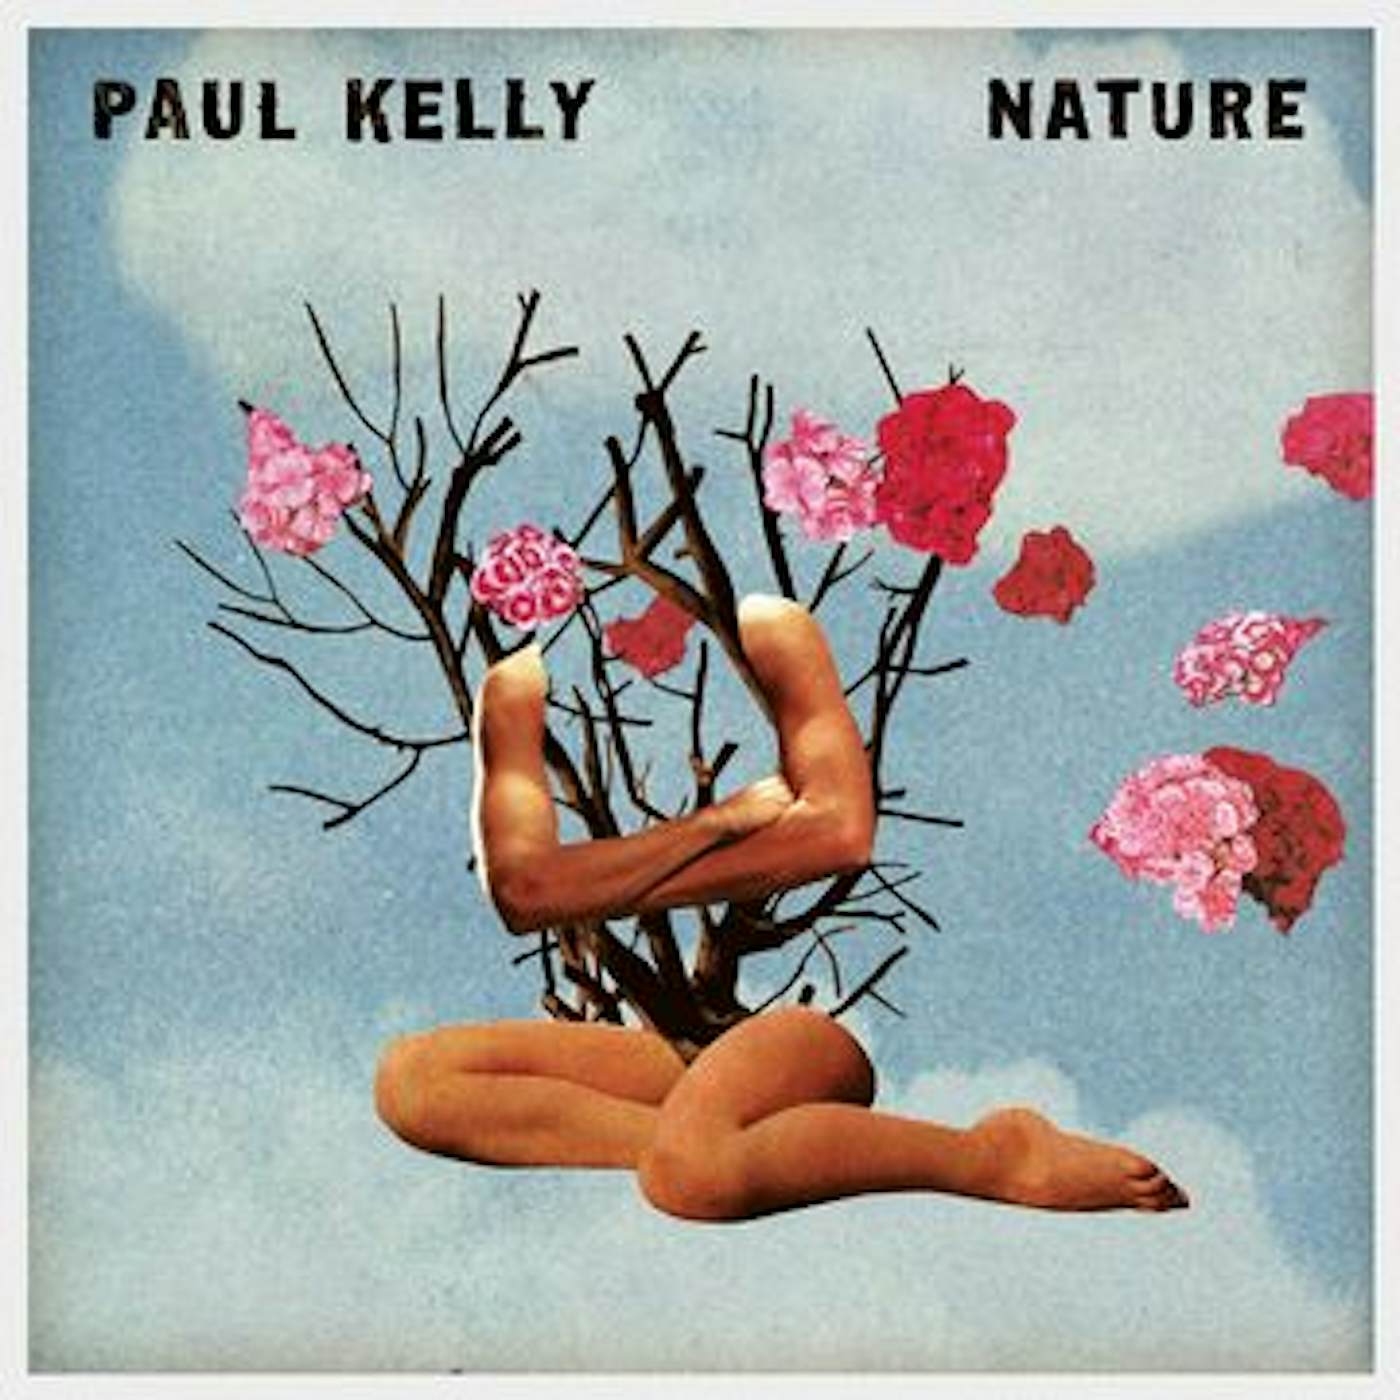 Paul Kelly NATURE CD